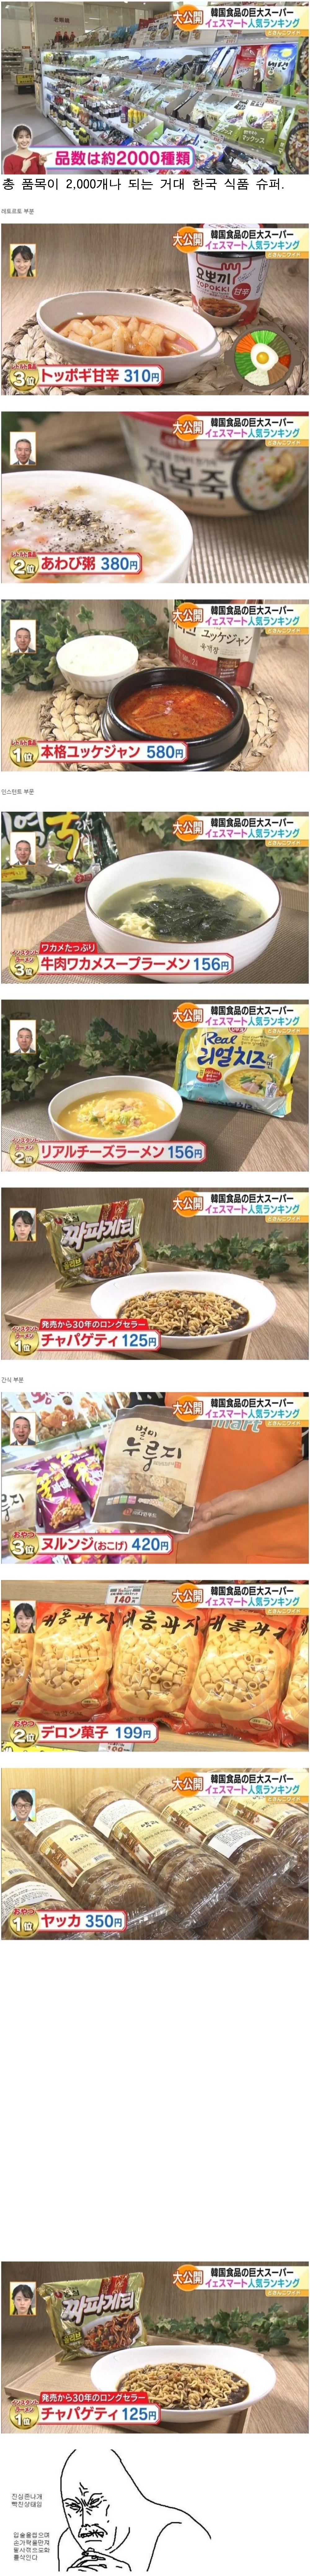 일본 대형매장 한국식품 판매 순위.png.jpg